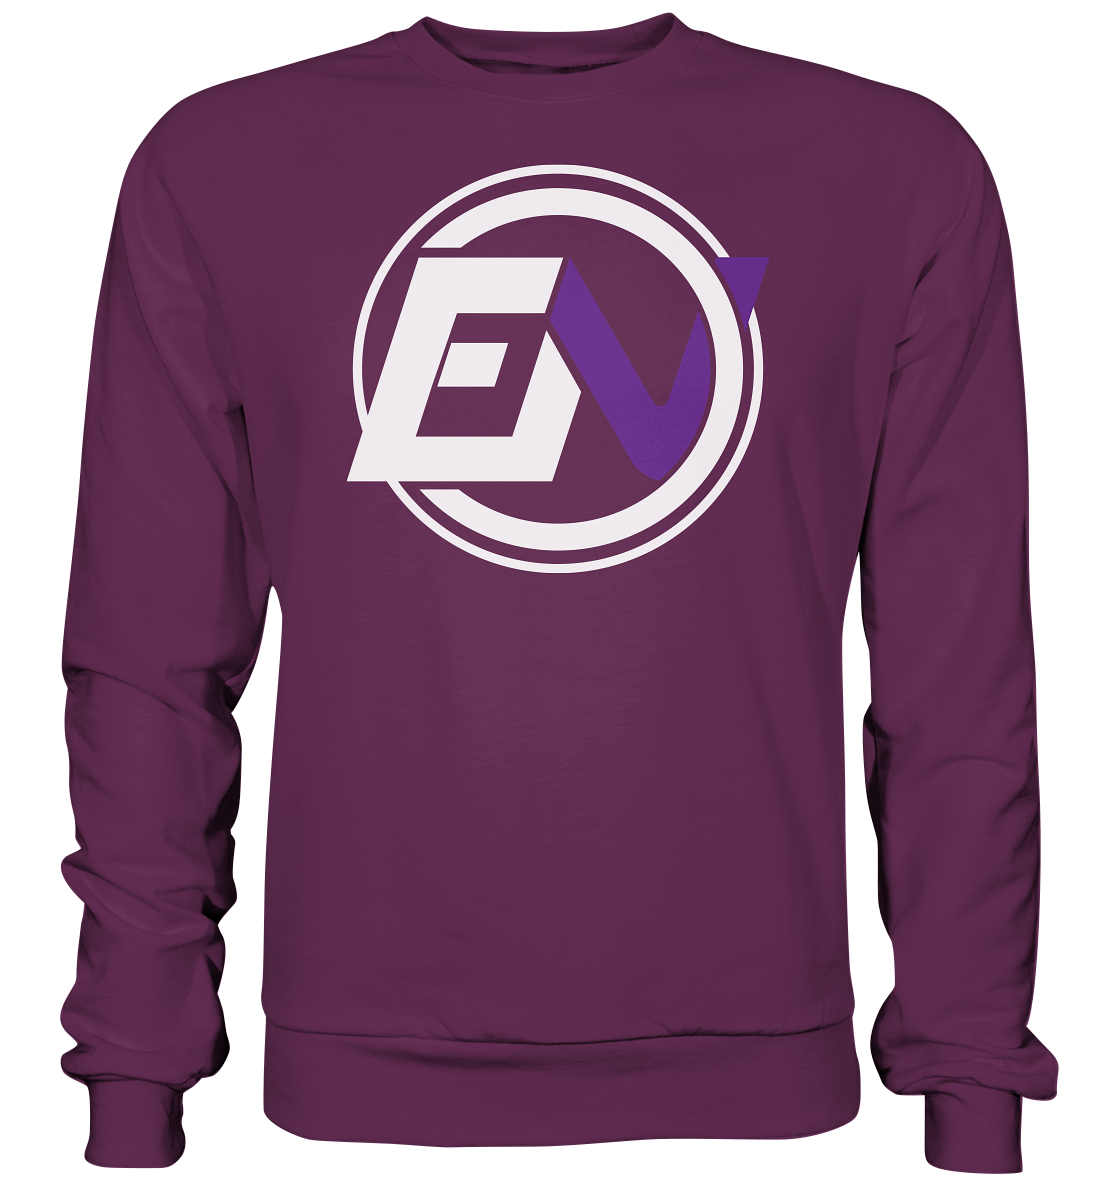 EVIDANCE NATION - Basic Sweatshirt